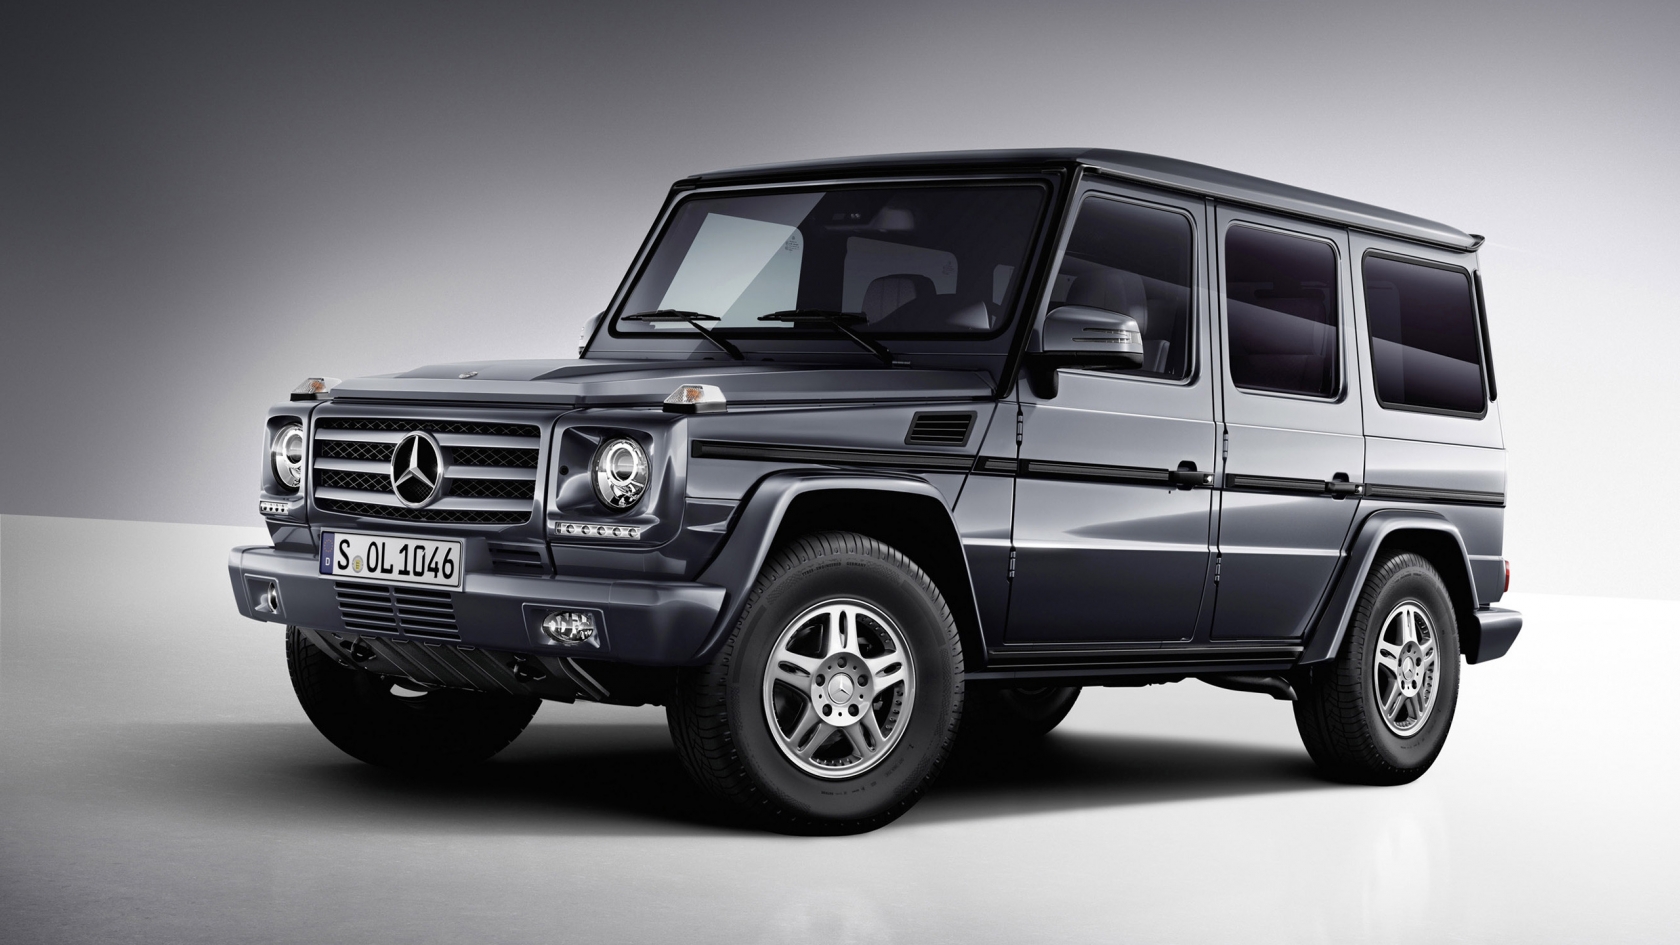 Mercedes Benz G Class Studio 2013 for 1680 x 945 HDTV resolution